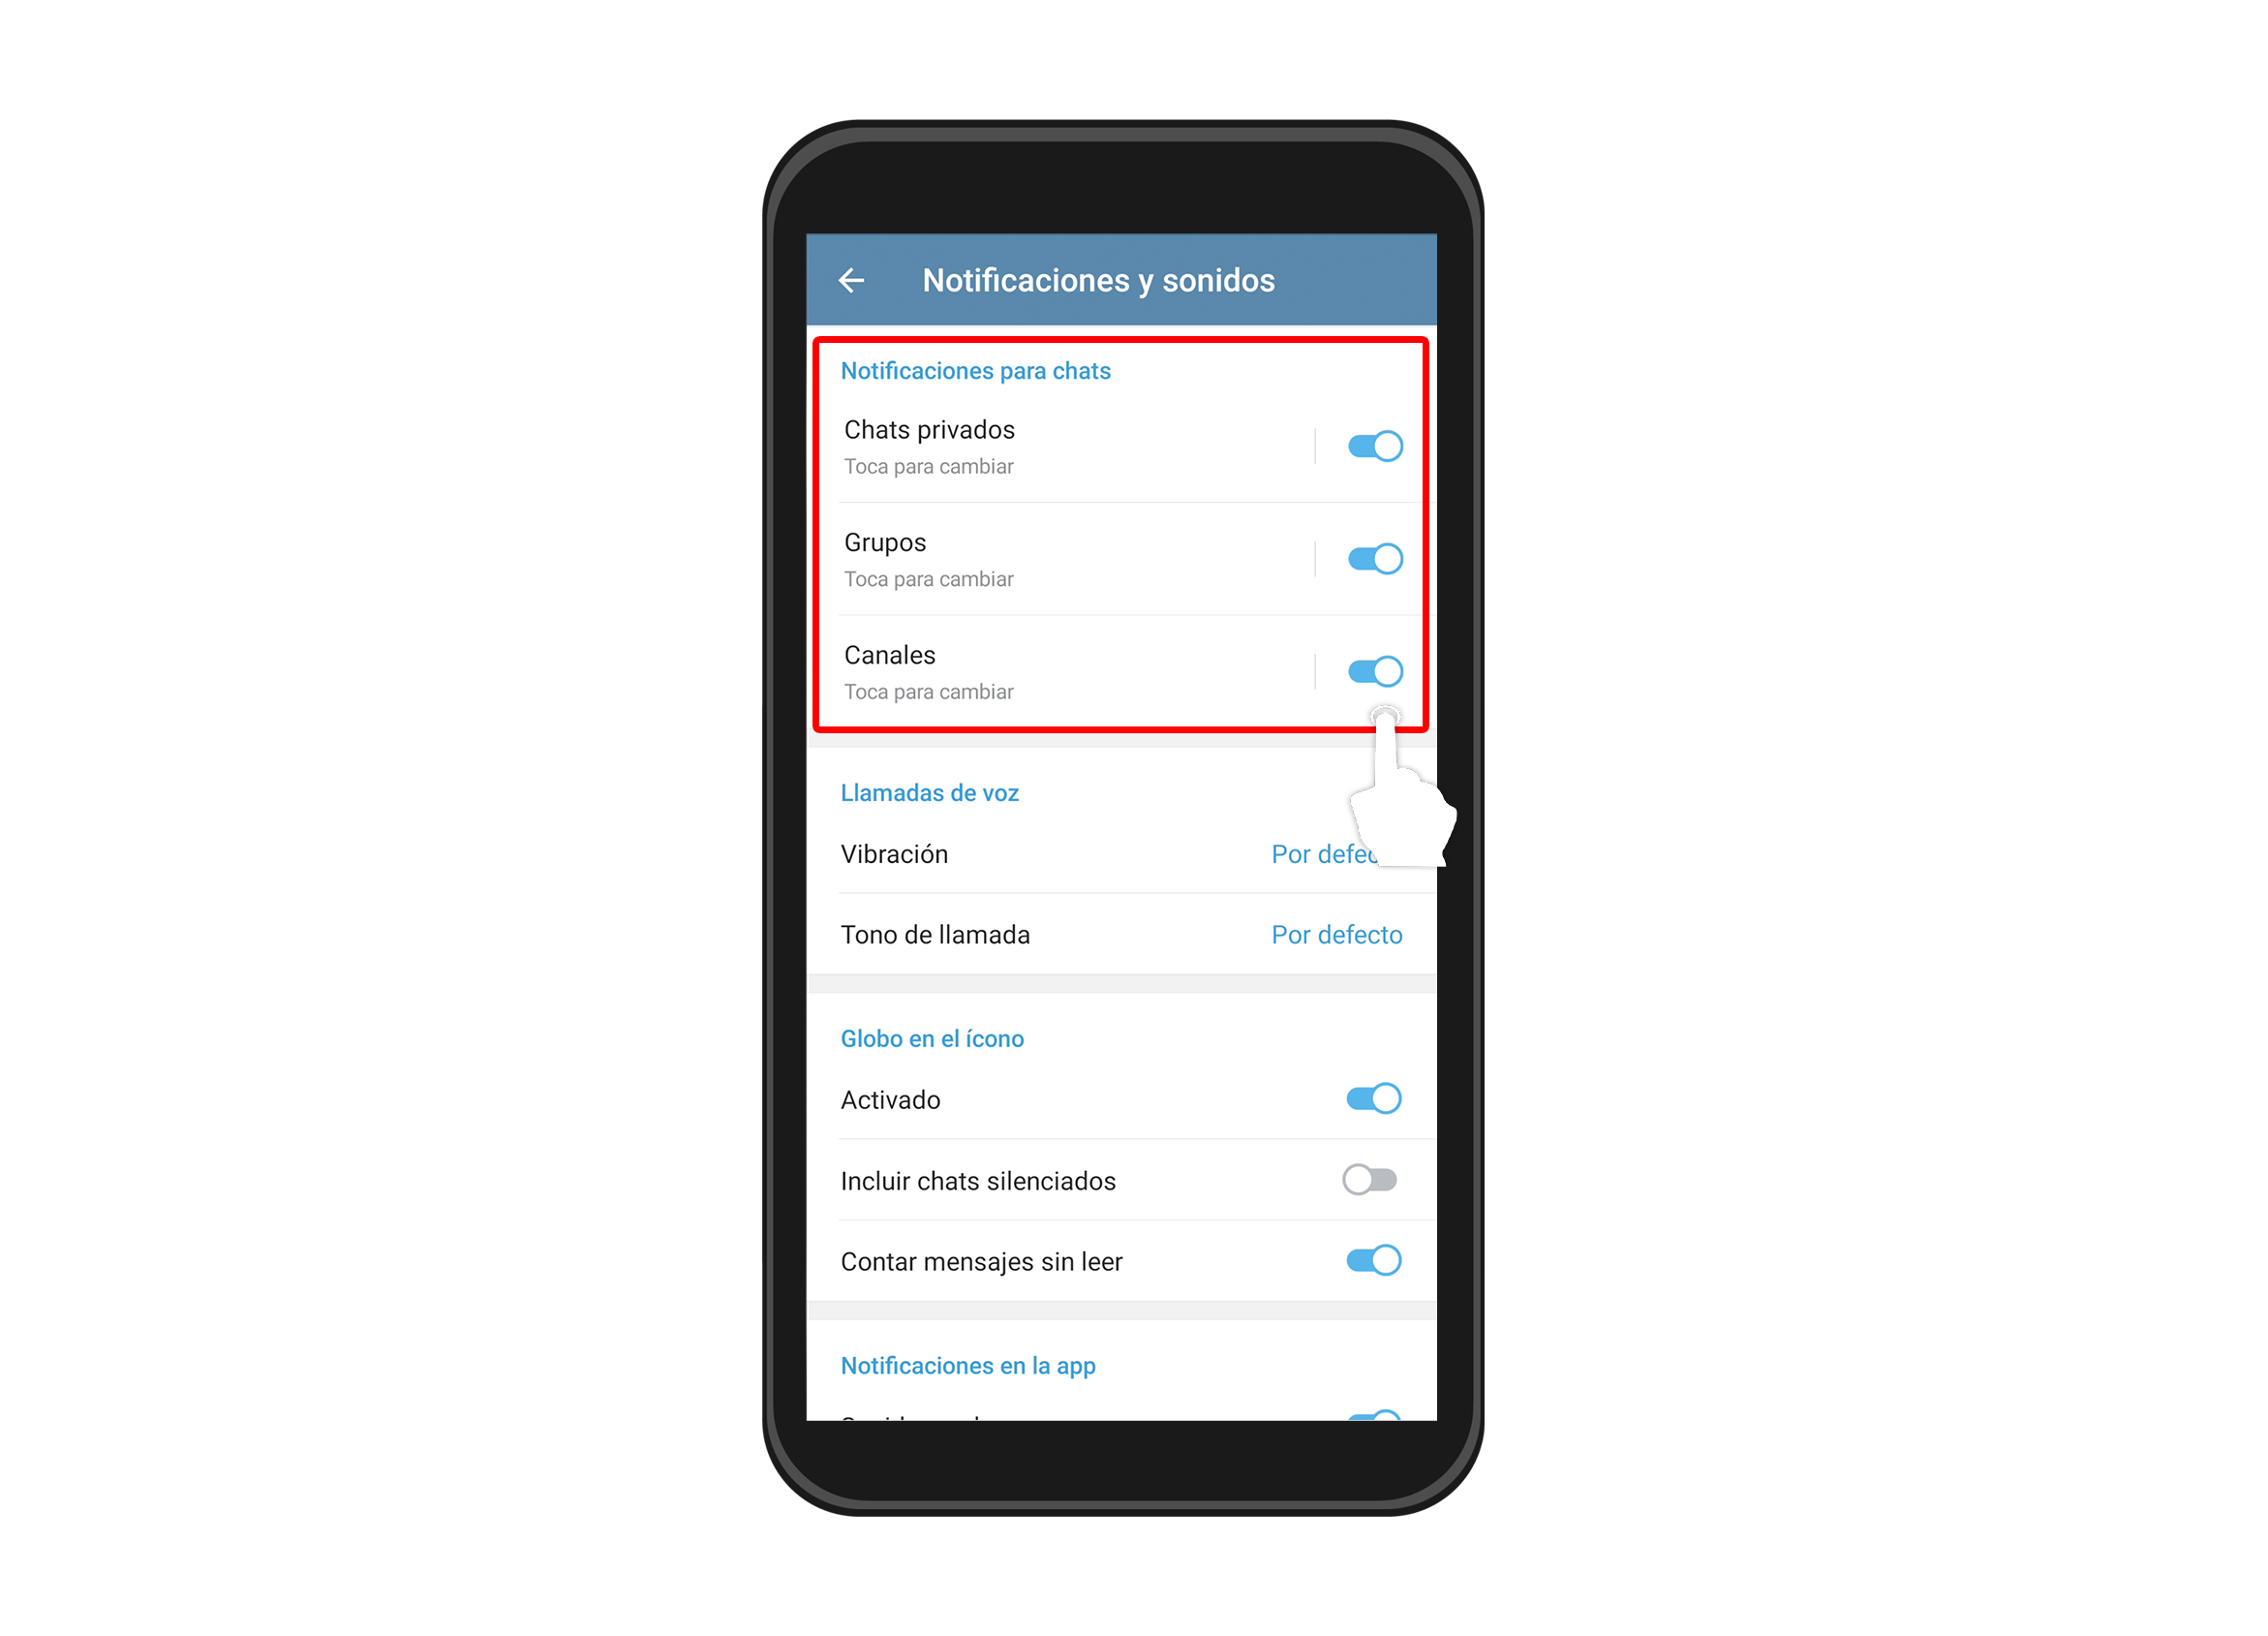 Podrás activar o desactivar las notificaciones que tengas en tus chats privados, grupos o canales de la aplicación simplemente pulsando el ícono de activación que se encuentra en la parte derecha de cada opción.